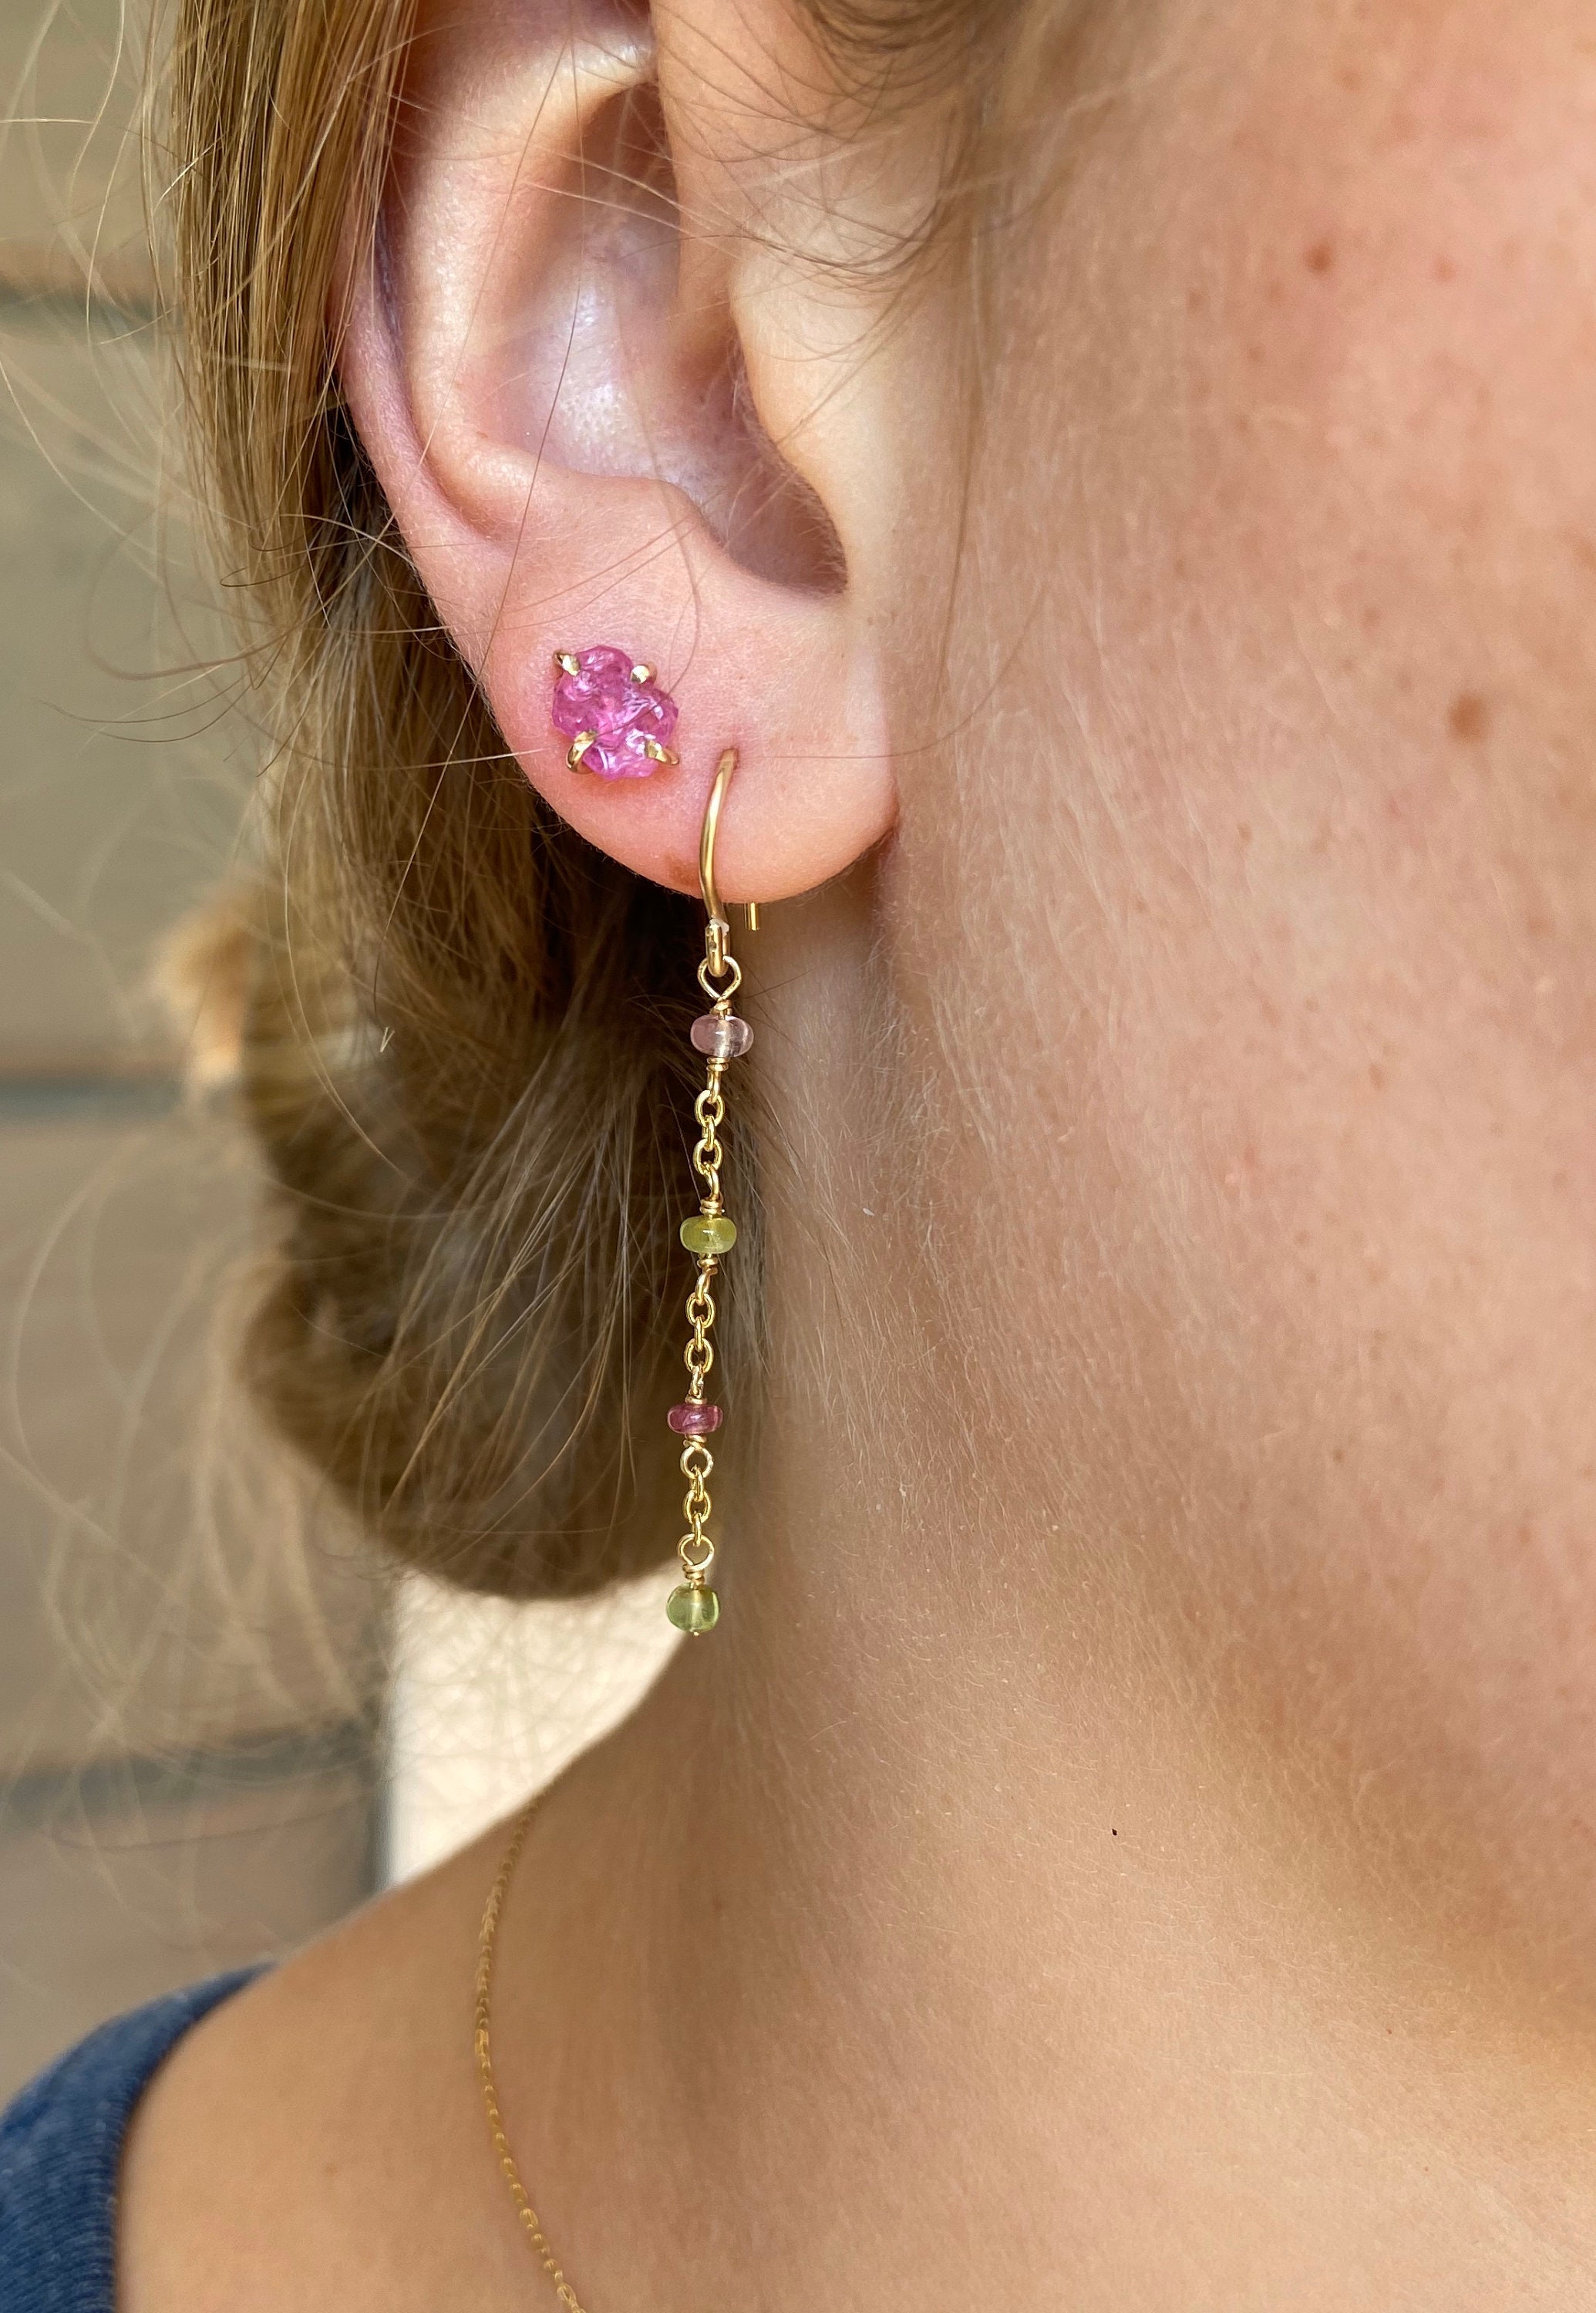 Cantikjewelry Watermelon Tourmaline Long Earrings October Birthstone Earrings Multicolor Tourmaline Earrings Jewellery Earrings Dangle & Drop Earrings Long Beaded Earrings 